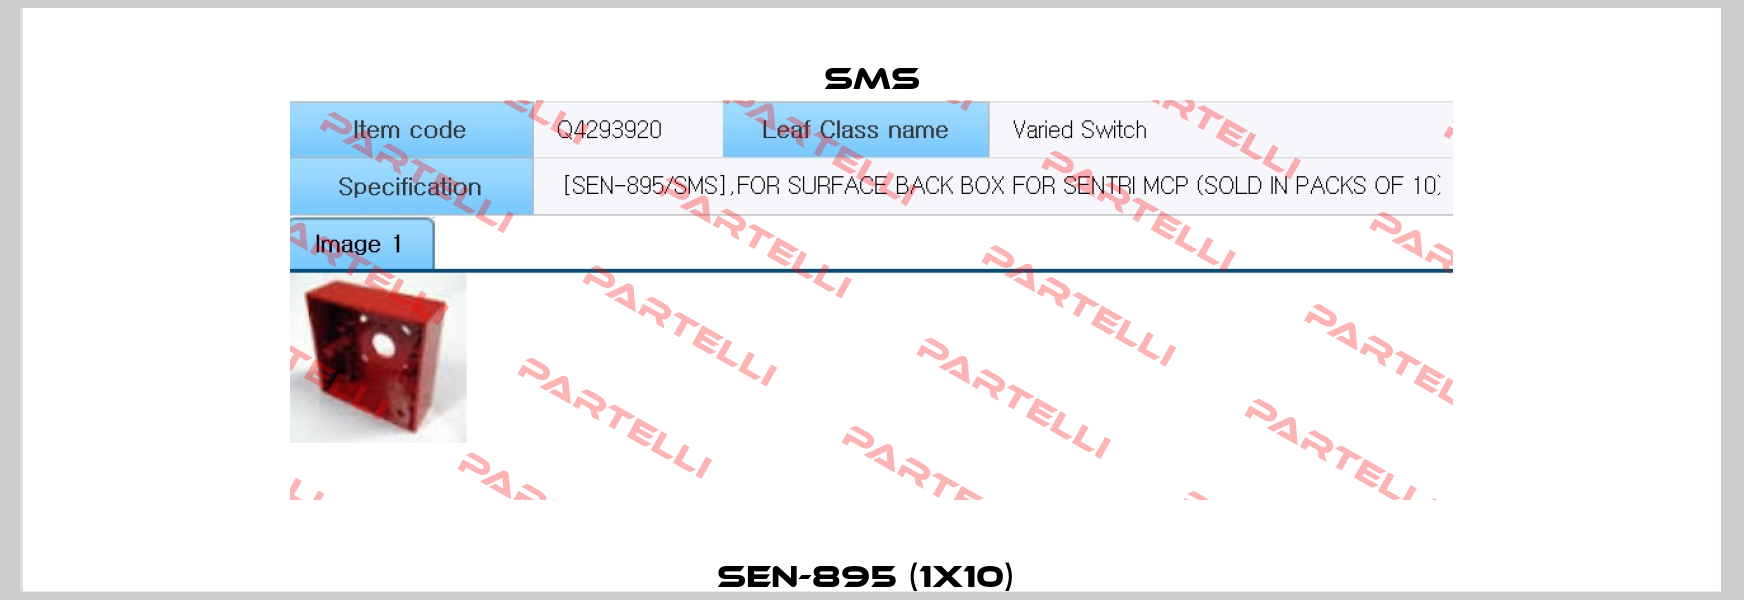 SEN-895 (1x10)  SMS